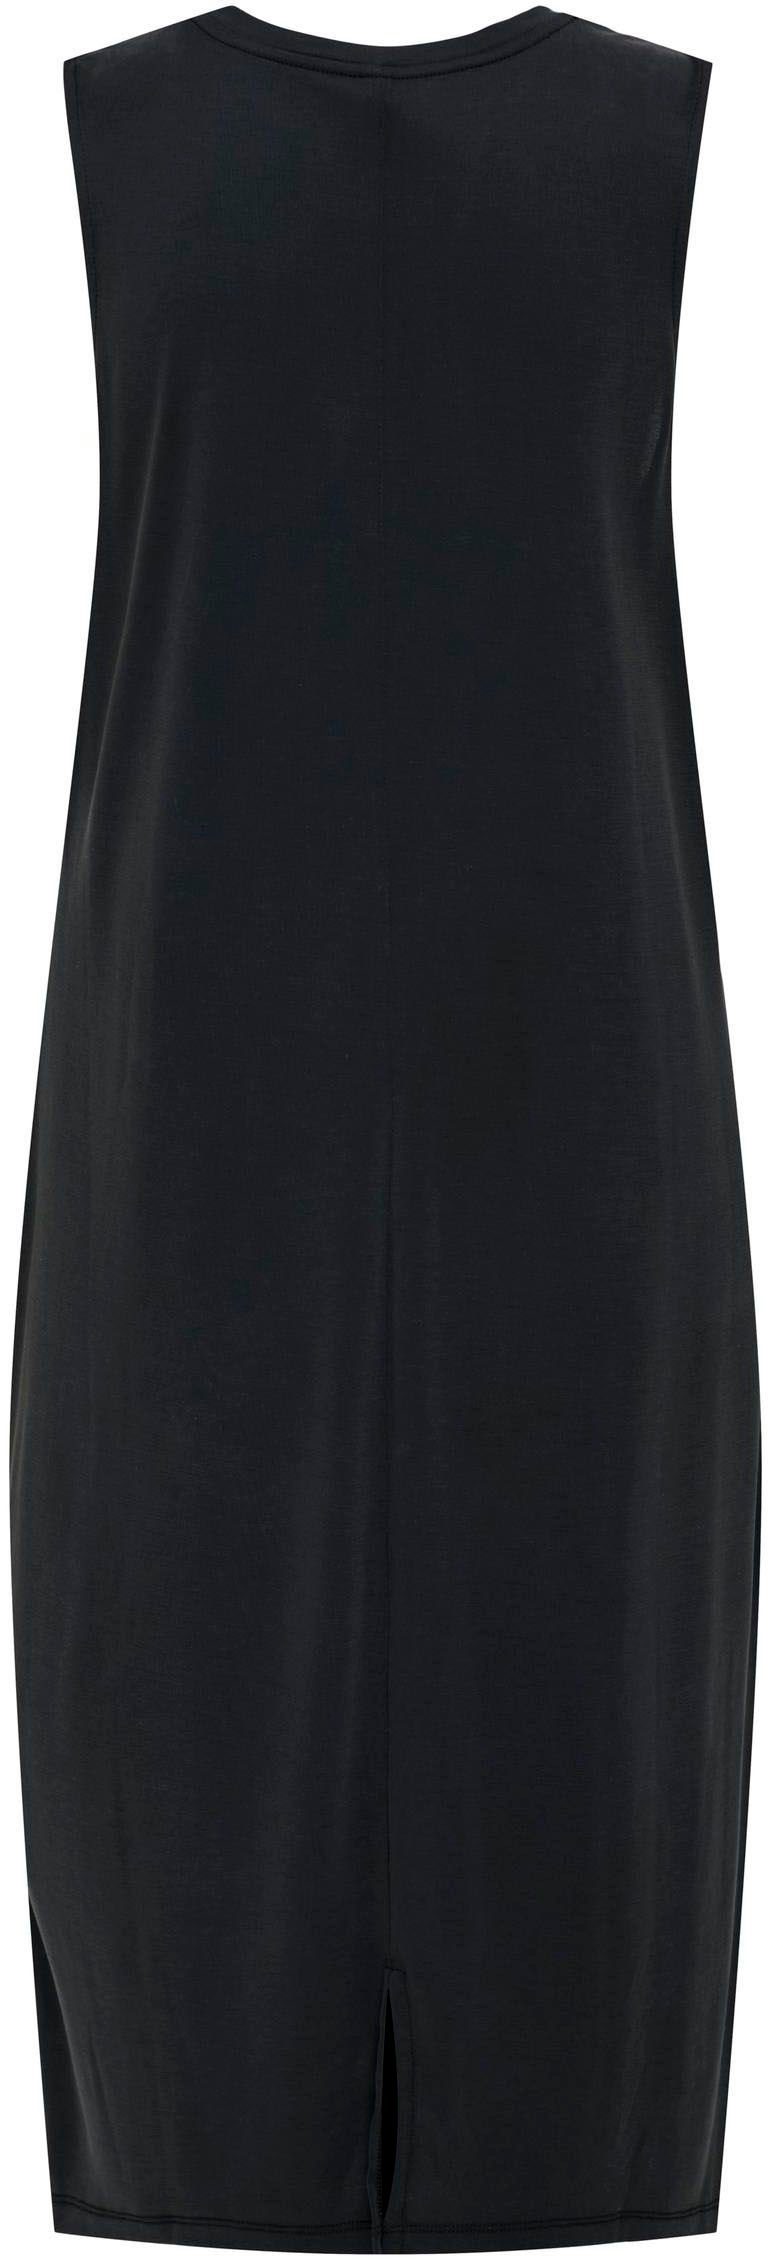 MODAL JRS NOOS DRESS in ONLFREE Midi-Länge Jerseykleid Black ONLY S/L